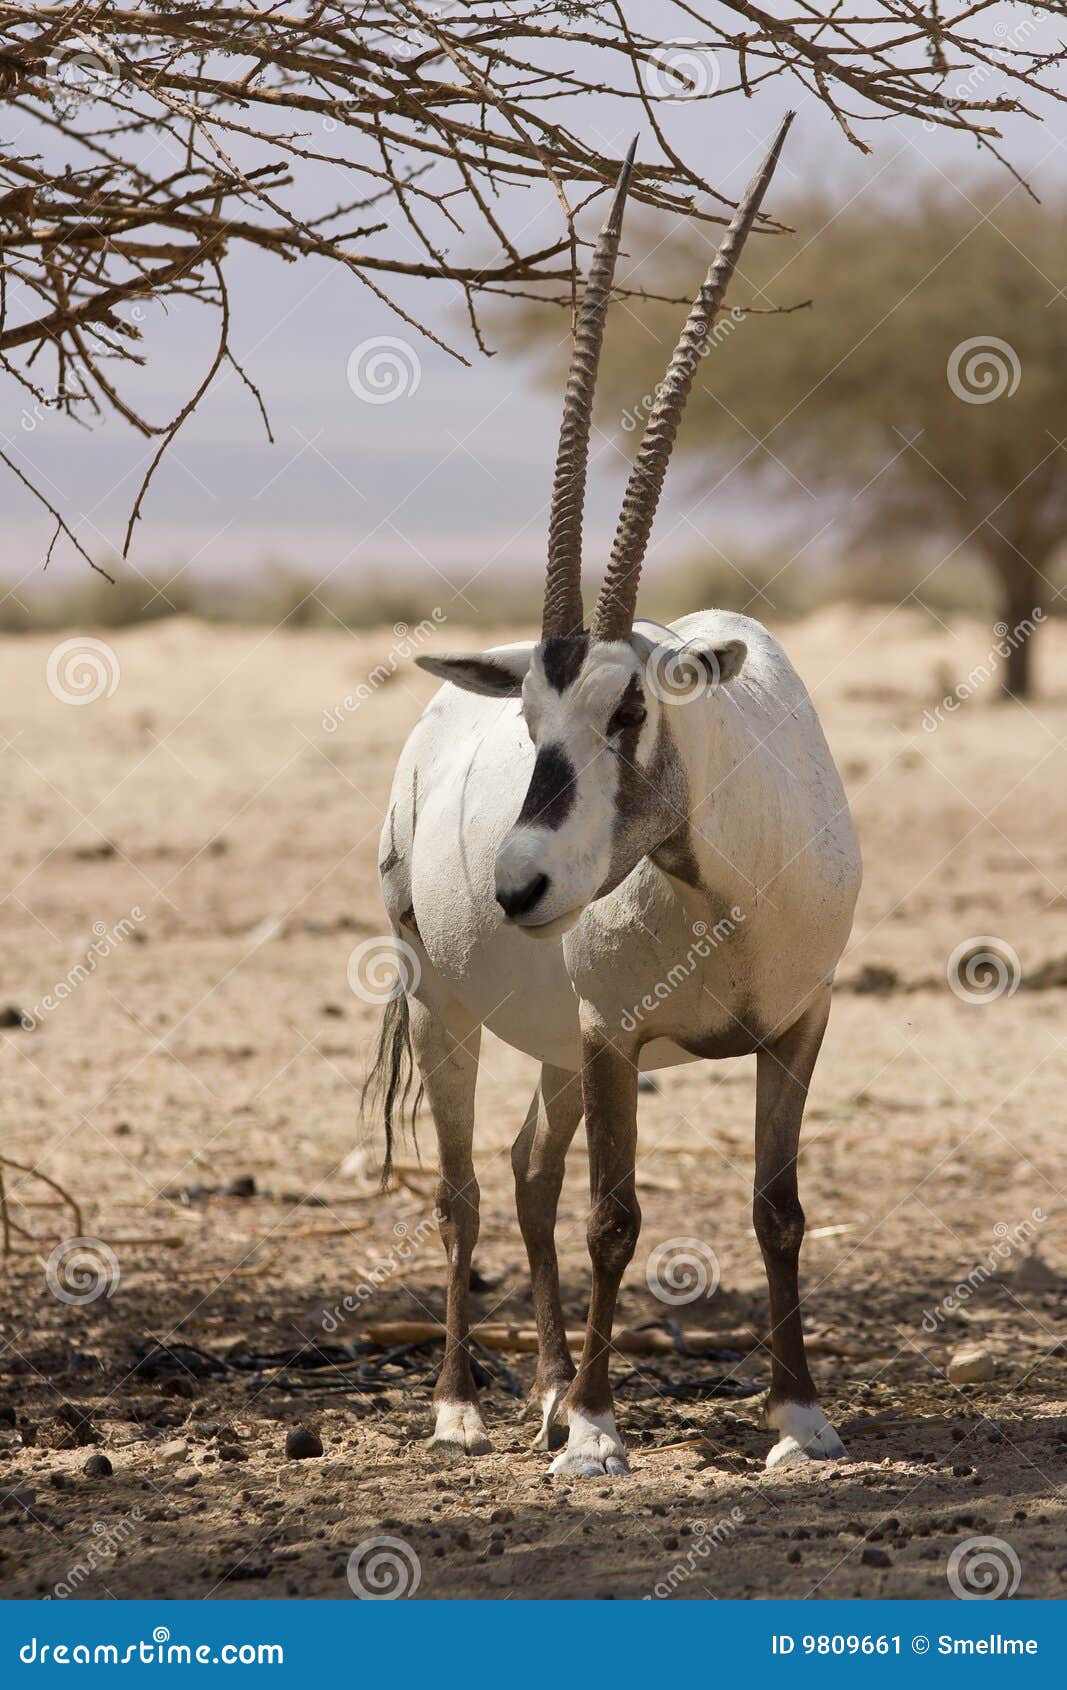 arabian oryx antelope